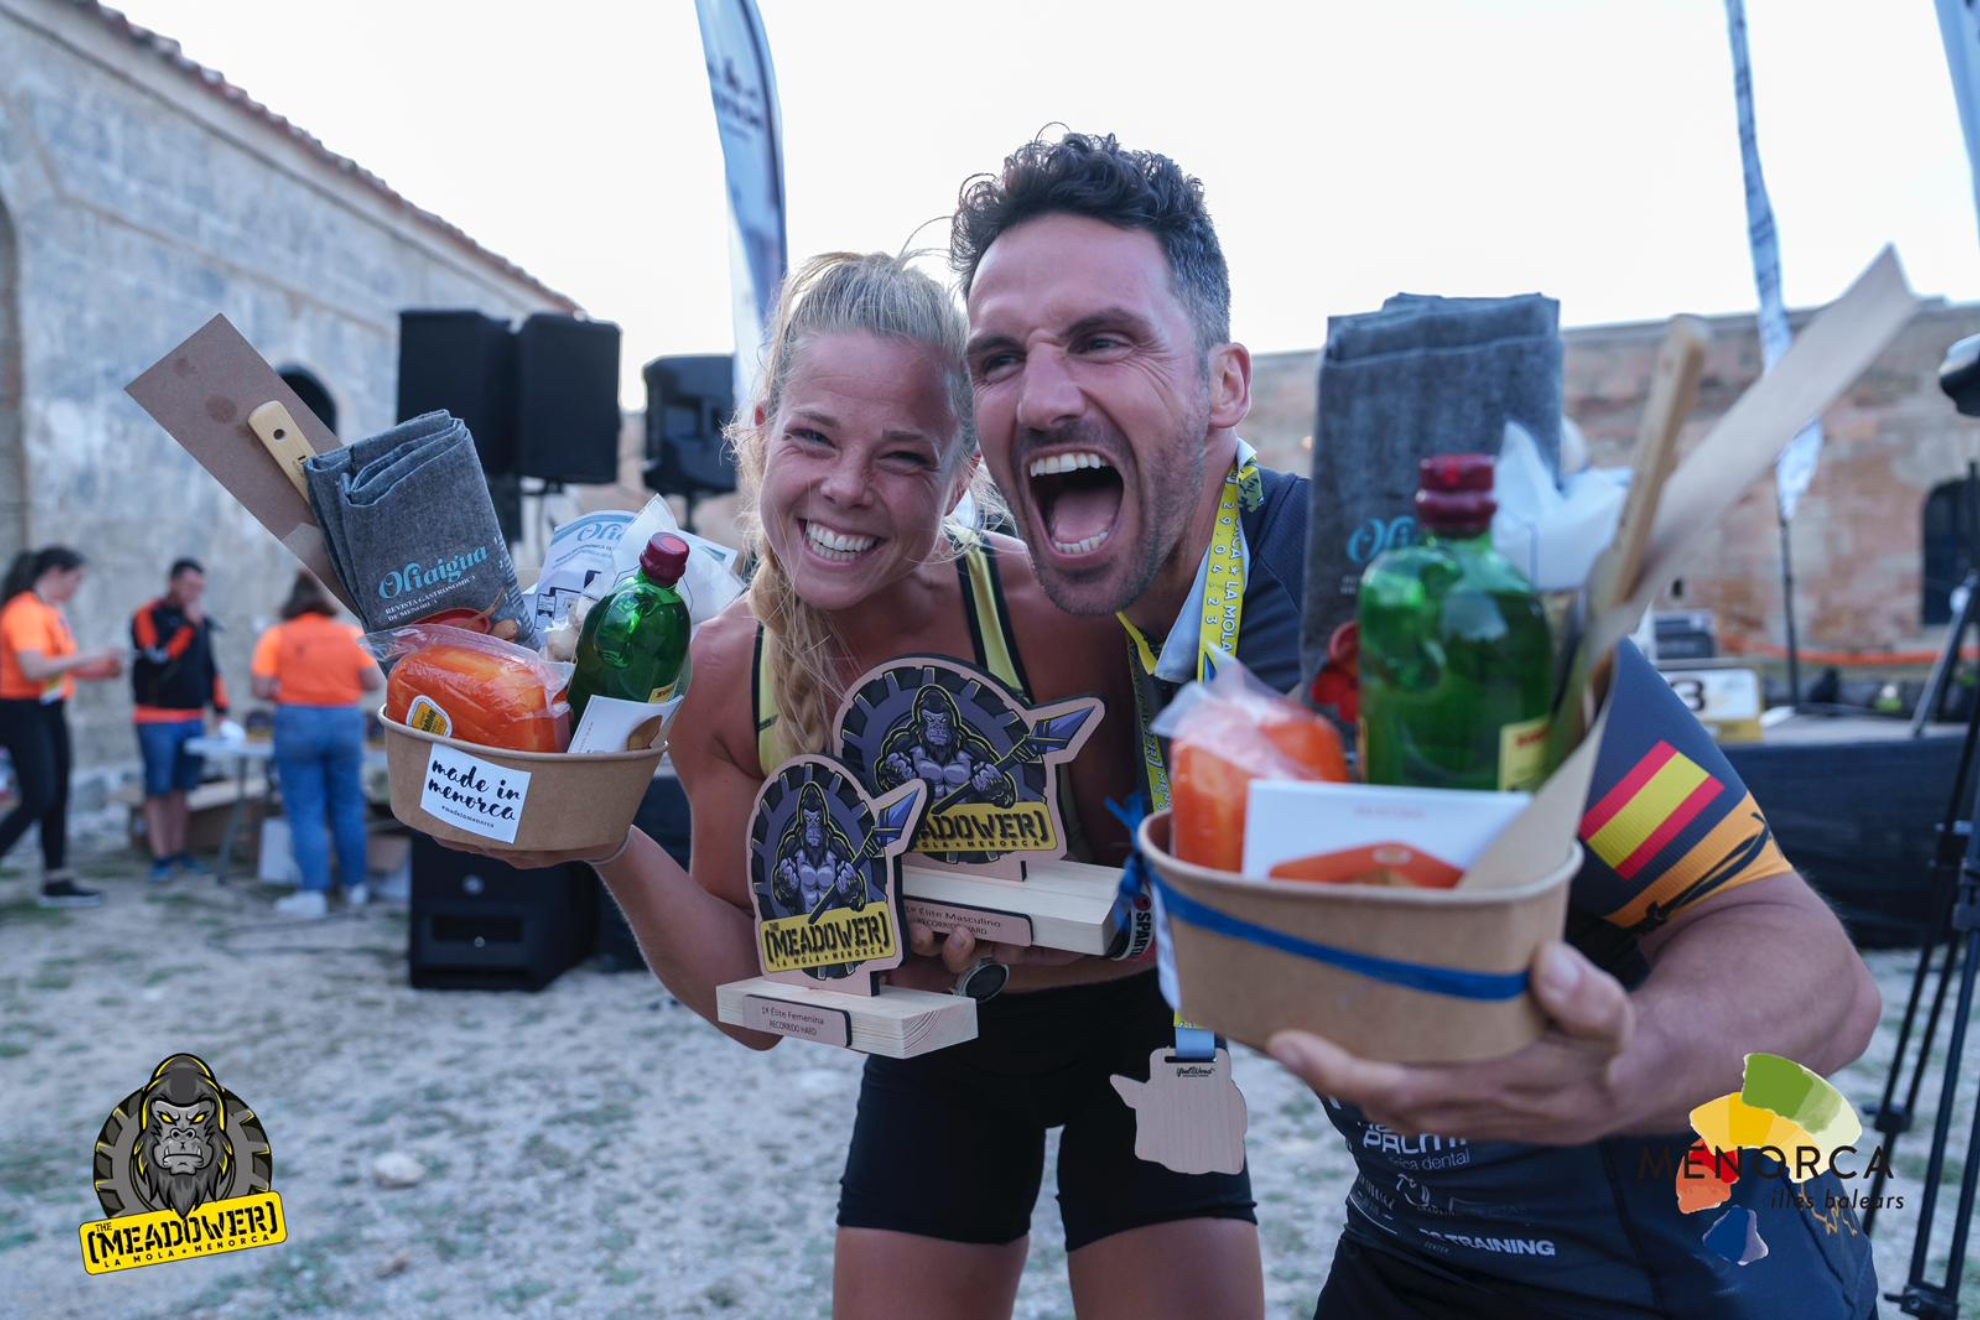 Petra Arvela y Alex Sibot ganan la Meadower OCR La Mola Menorca